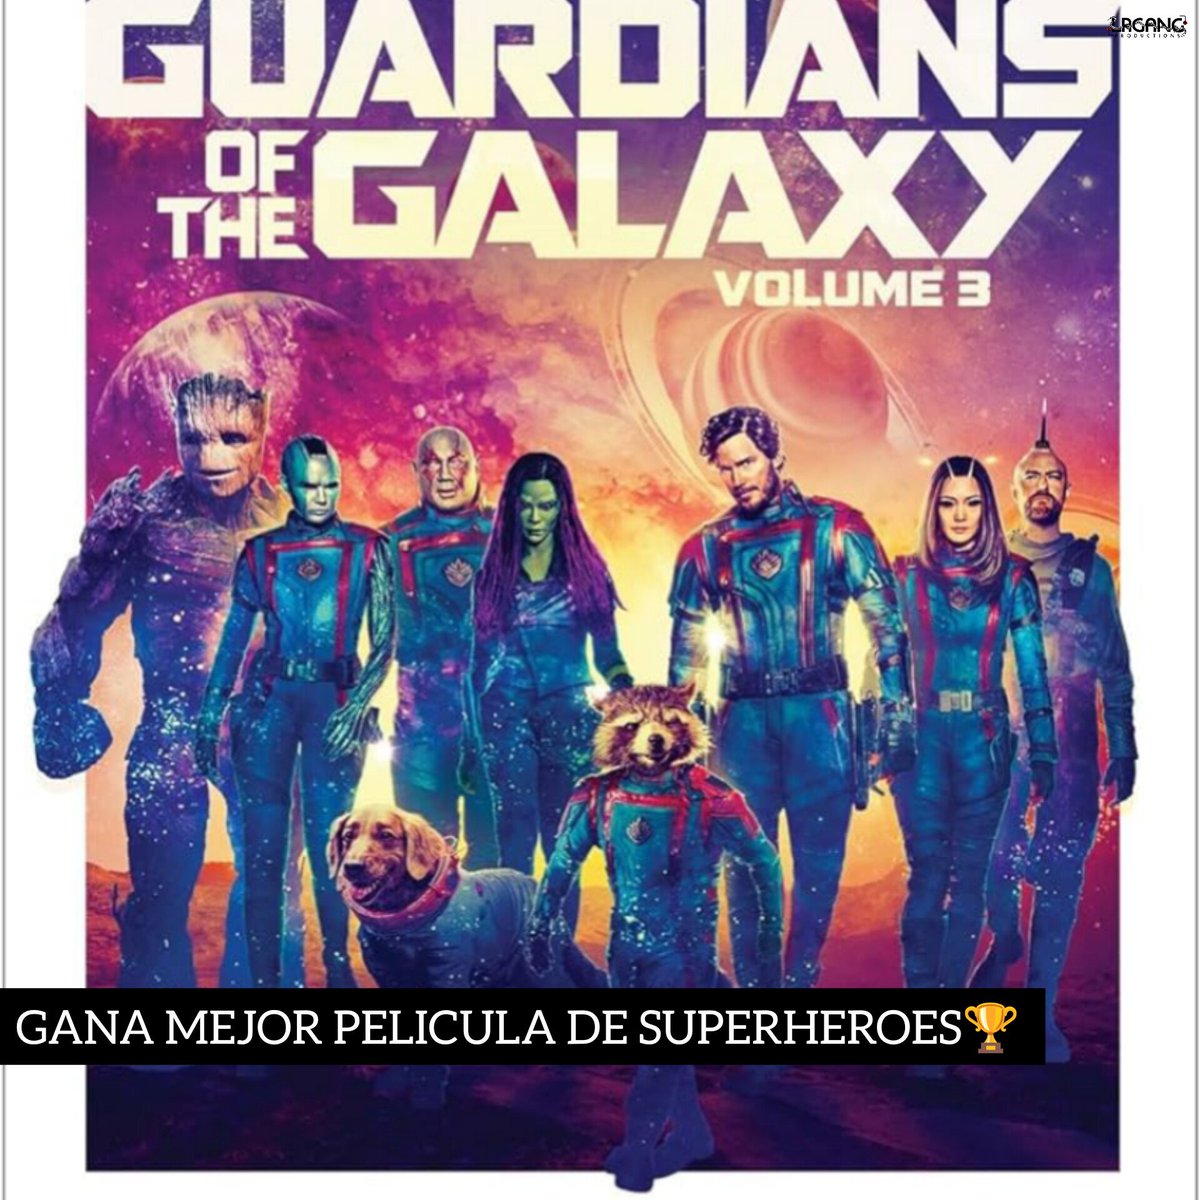 GANADORA🏆

#GuardianesDeLaGalaxiaVol3 ha ganado en la categoría Mejor Película de Superhéroes en los #SaturnAwards🤩